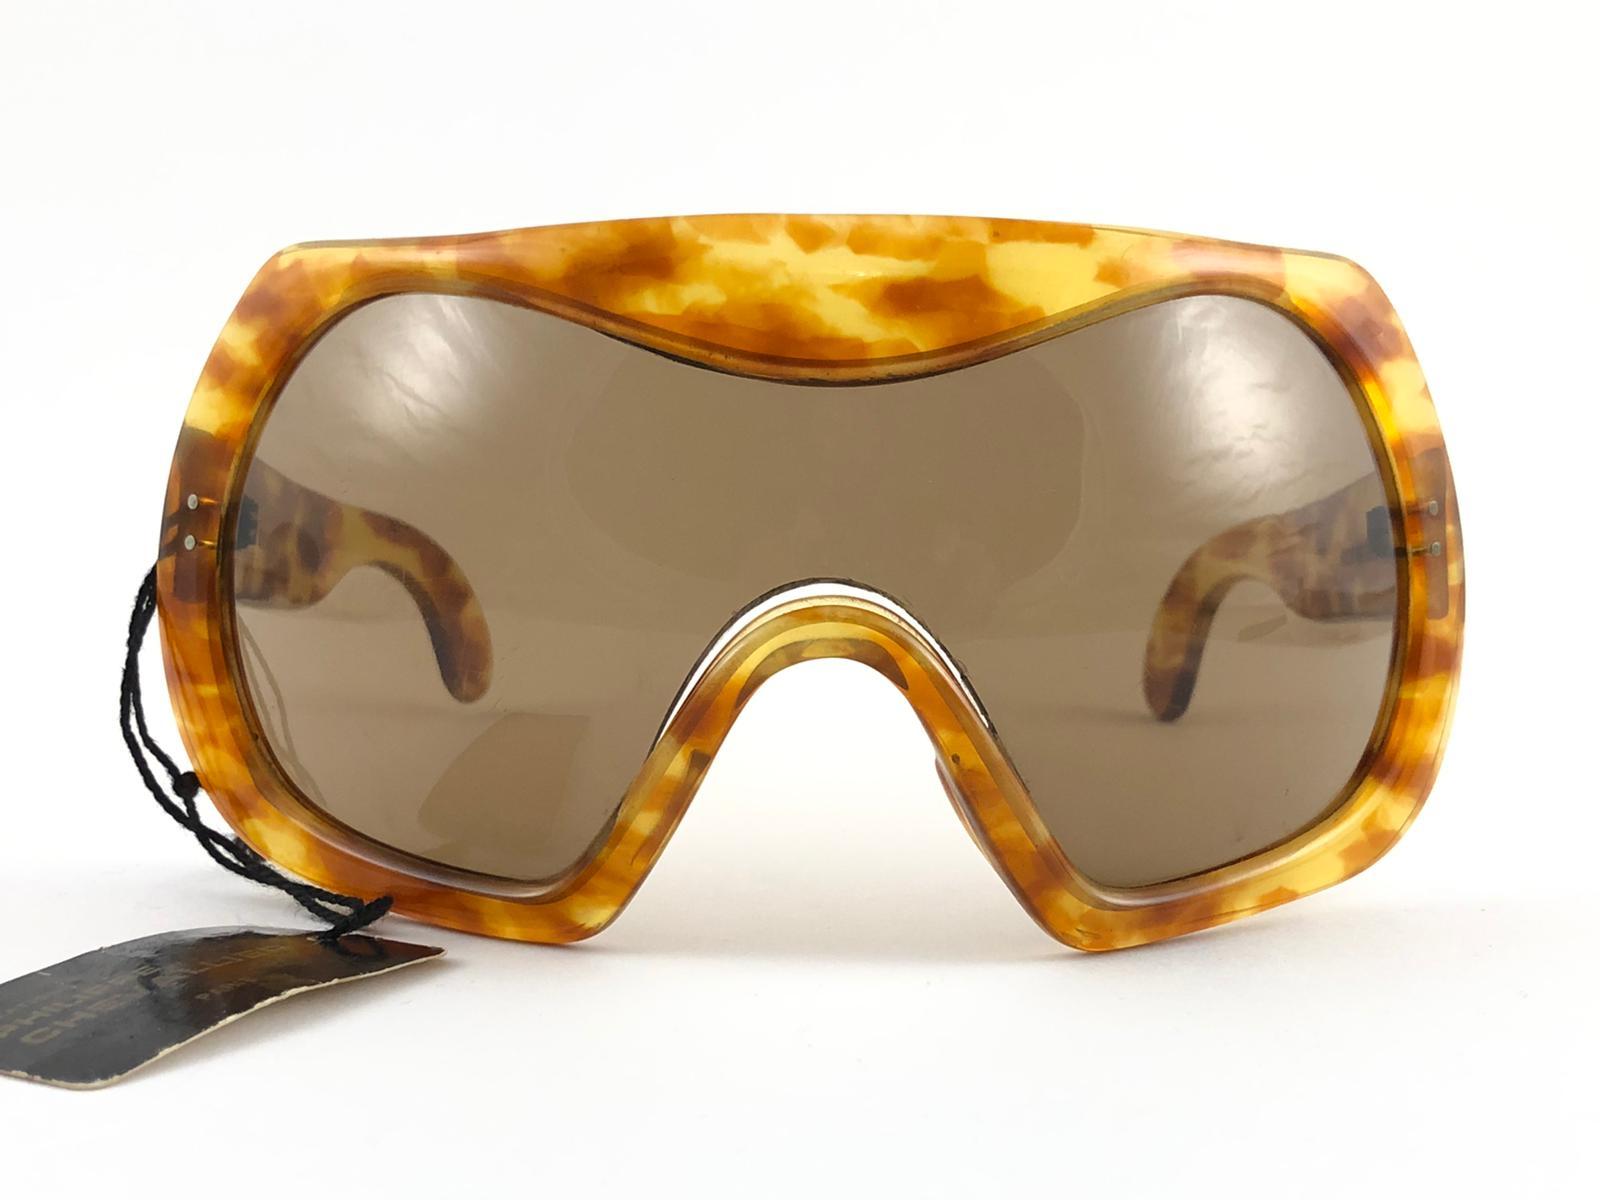 Nouvelle paire de lunettes de soleil vintage Philippe Chevalier, pièce de collection rare, en forme de tortue légère, avec un mono-lentille brun moyen impeccable. De la même série que celles portées par Miles Davis.
Une superbe trouvaille.